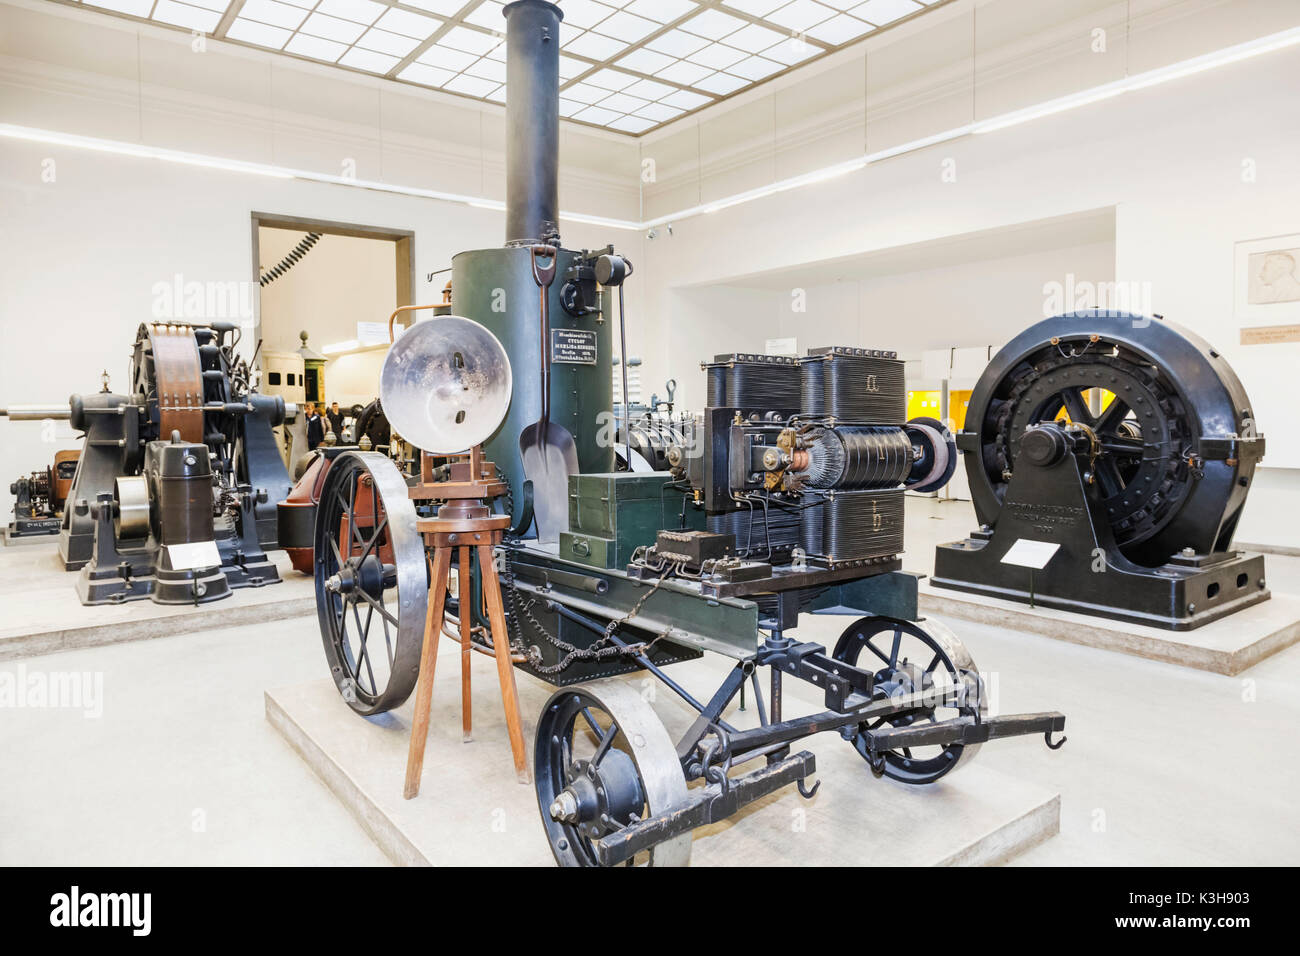 Germany, Bavaria, Munich, Deutsches Museum, exposition de Siemens & Halske historique du chariot d'éclairage 1878 Banque D'Images